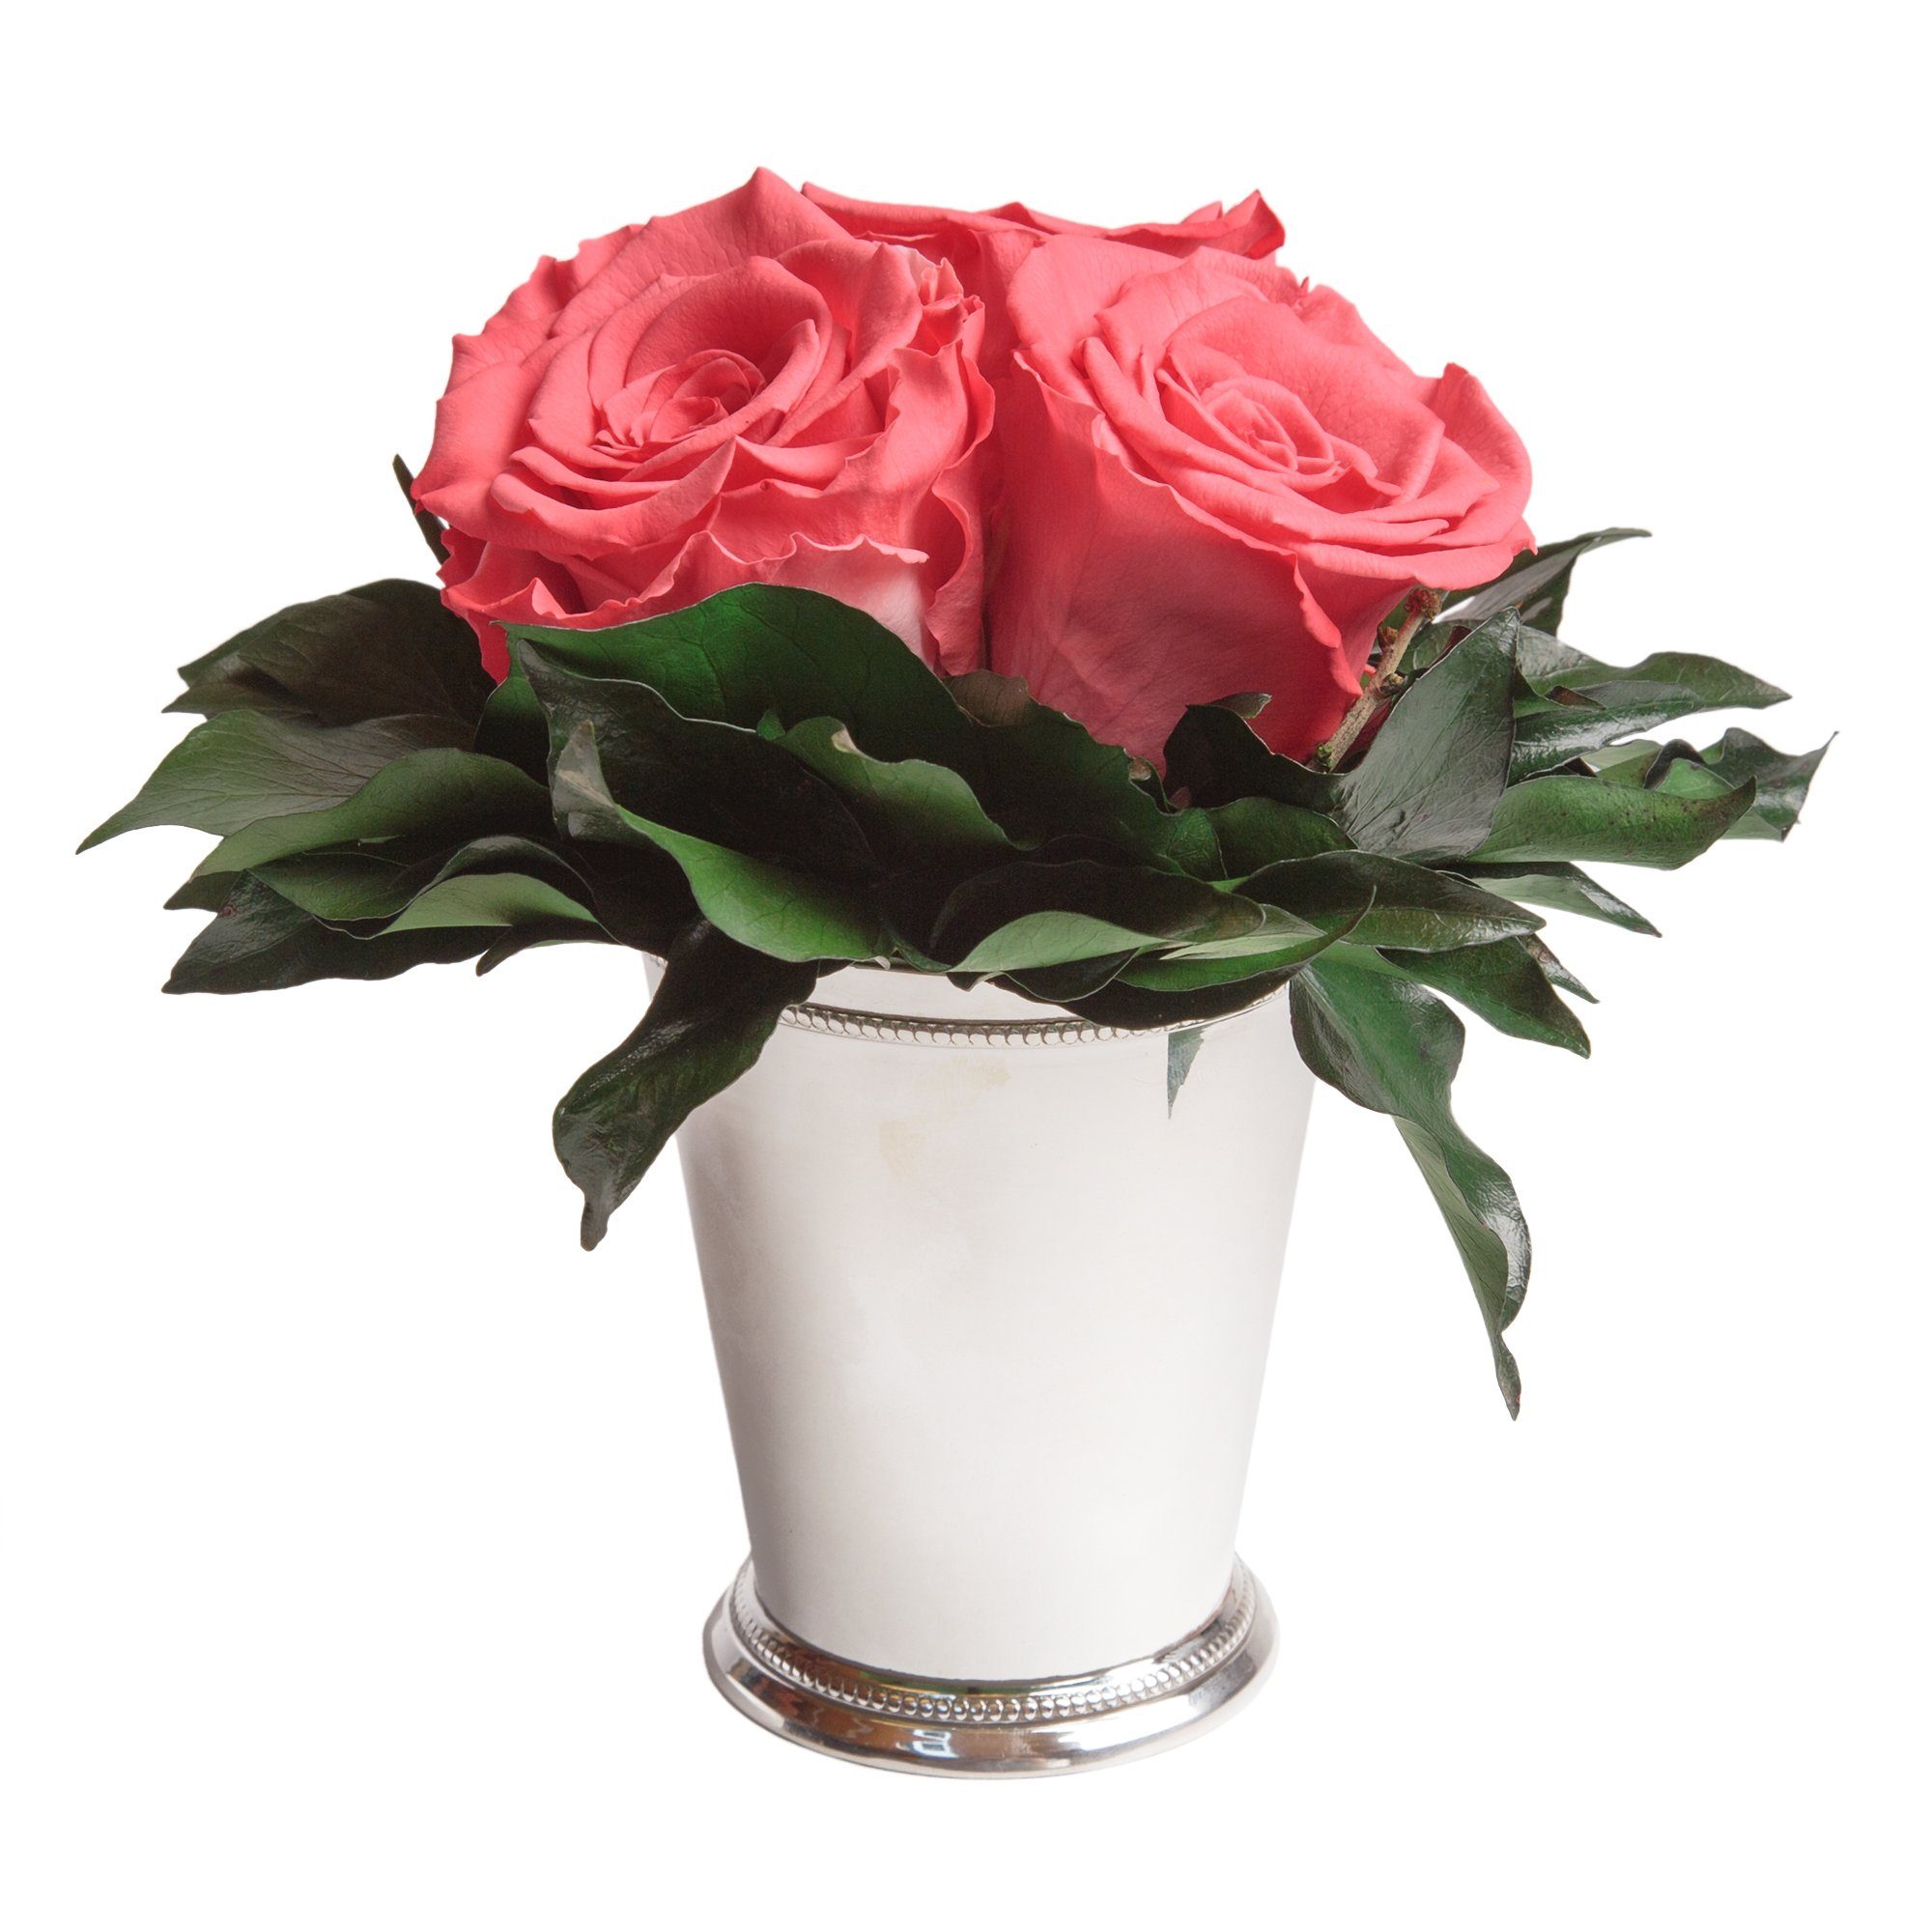 Kunstorchidee 3 Infinity Rosen silberfarbene Vase Wohnzimmer Deko Blumenstrauß Rose, ROSEMARIE SCHULZ Heidelberg, Höhe 15 cm, Rose haltbar bis zu 3 Jahre Korall